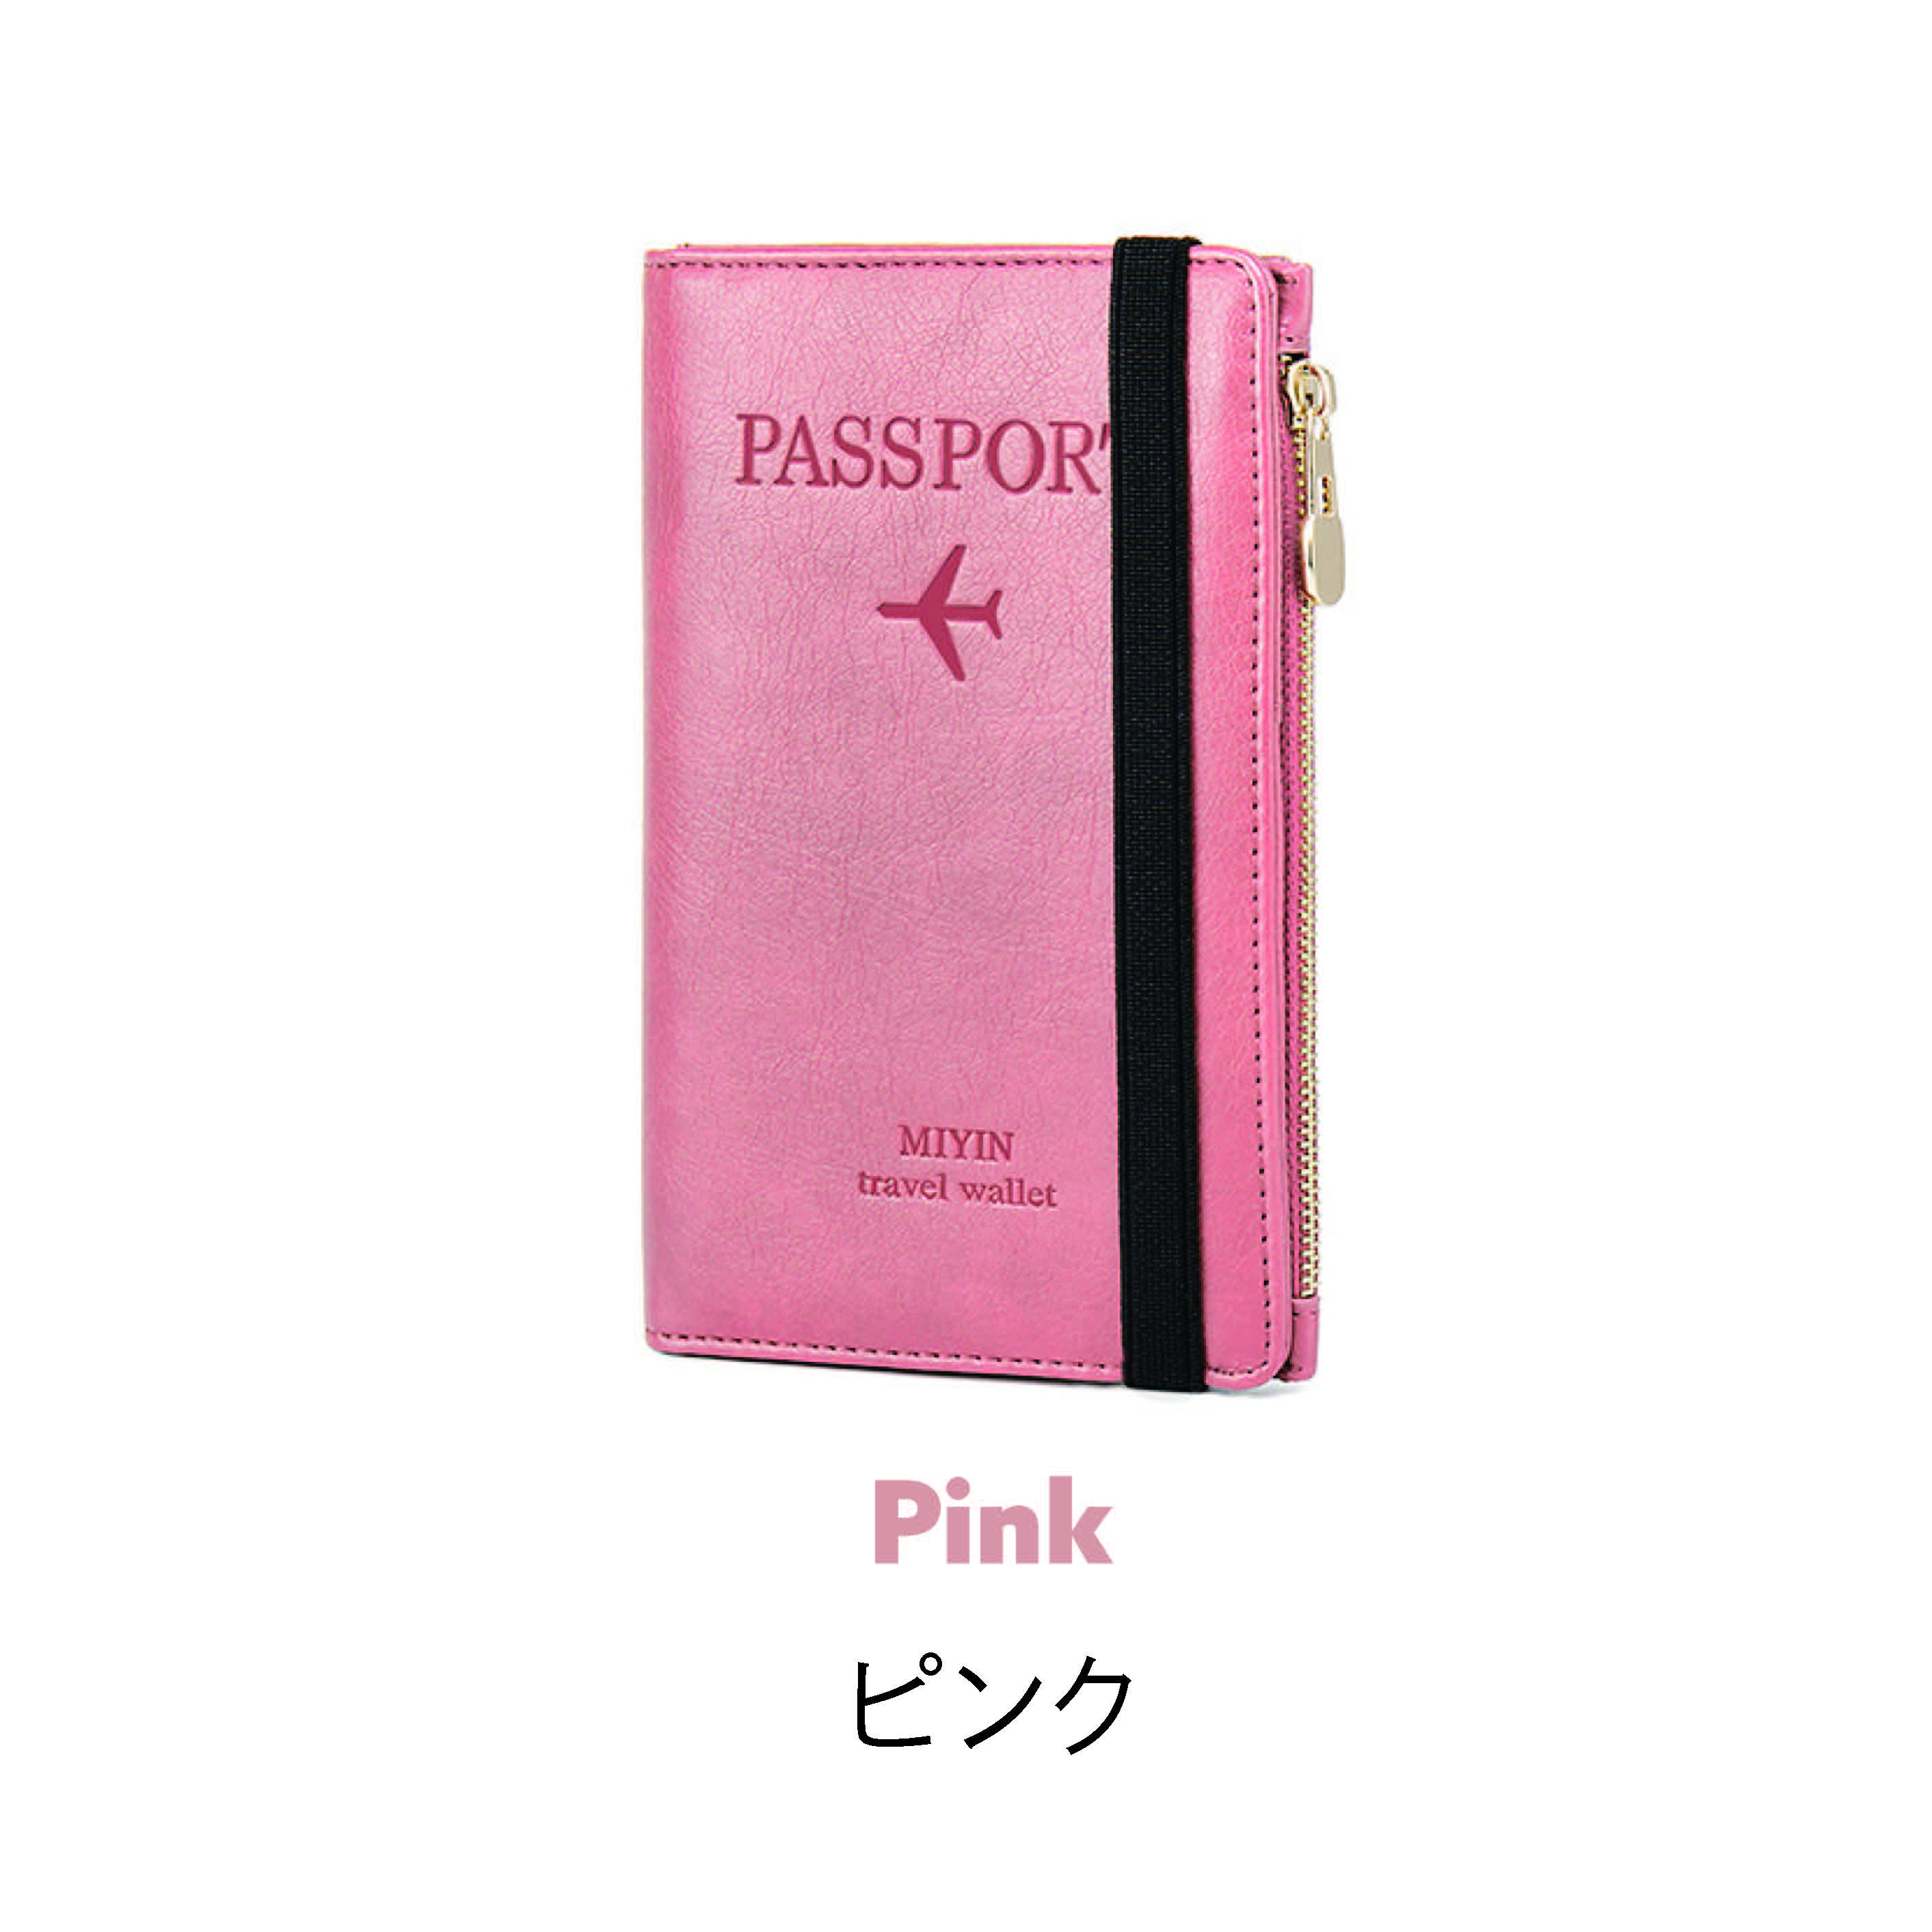 パスポートケース スキミング防止 航空券入れ パスポート入れ 財布